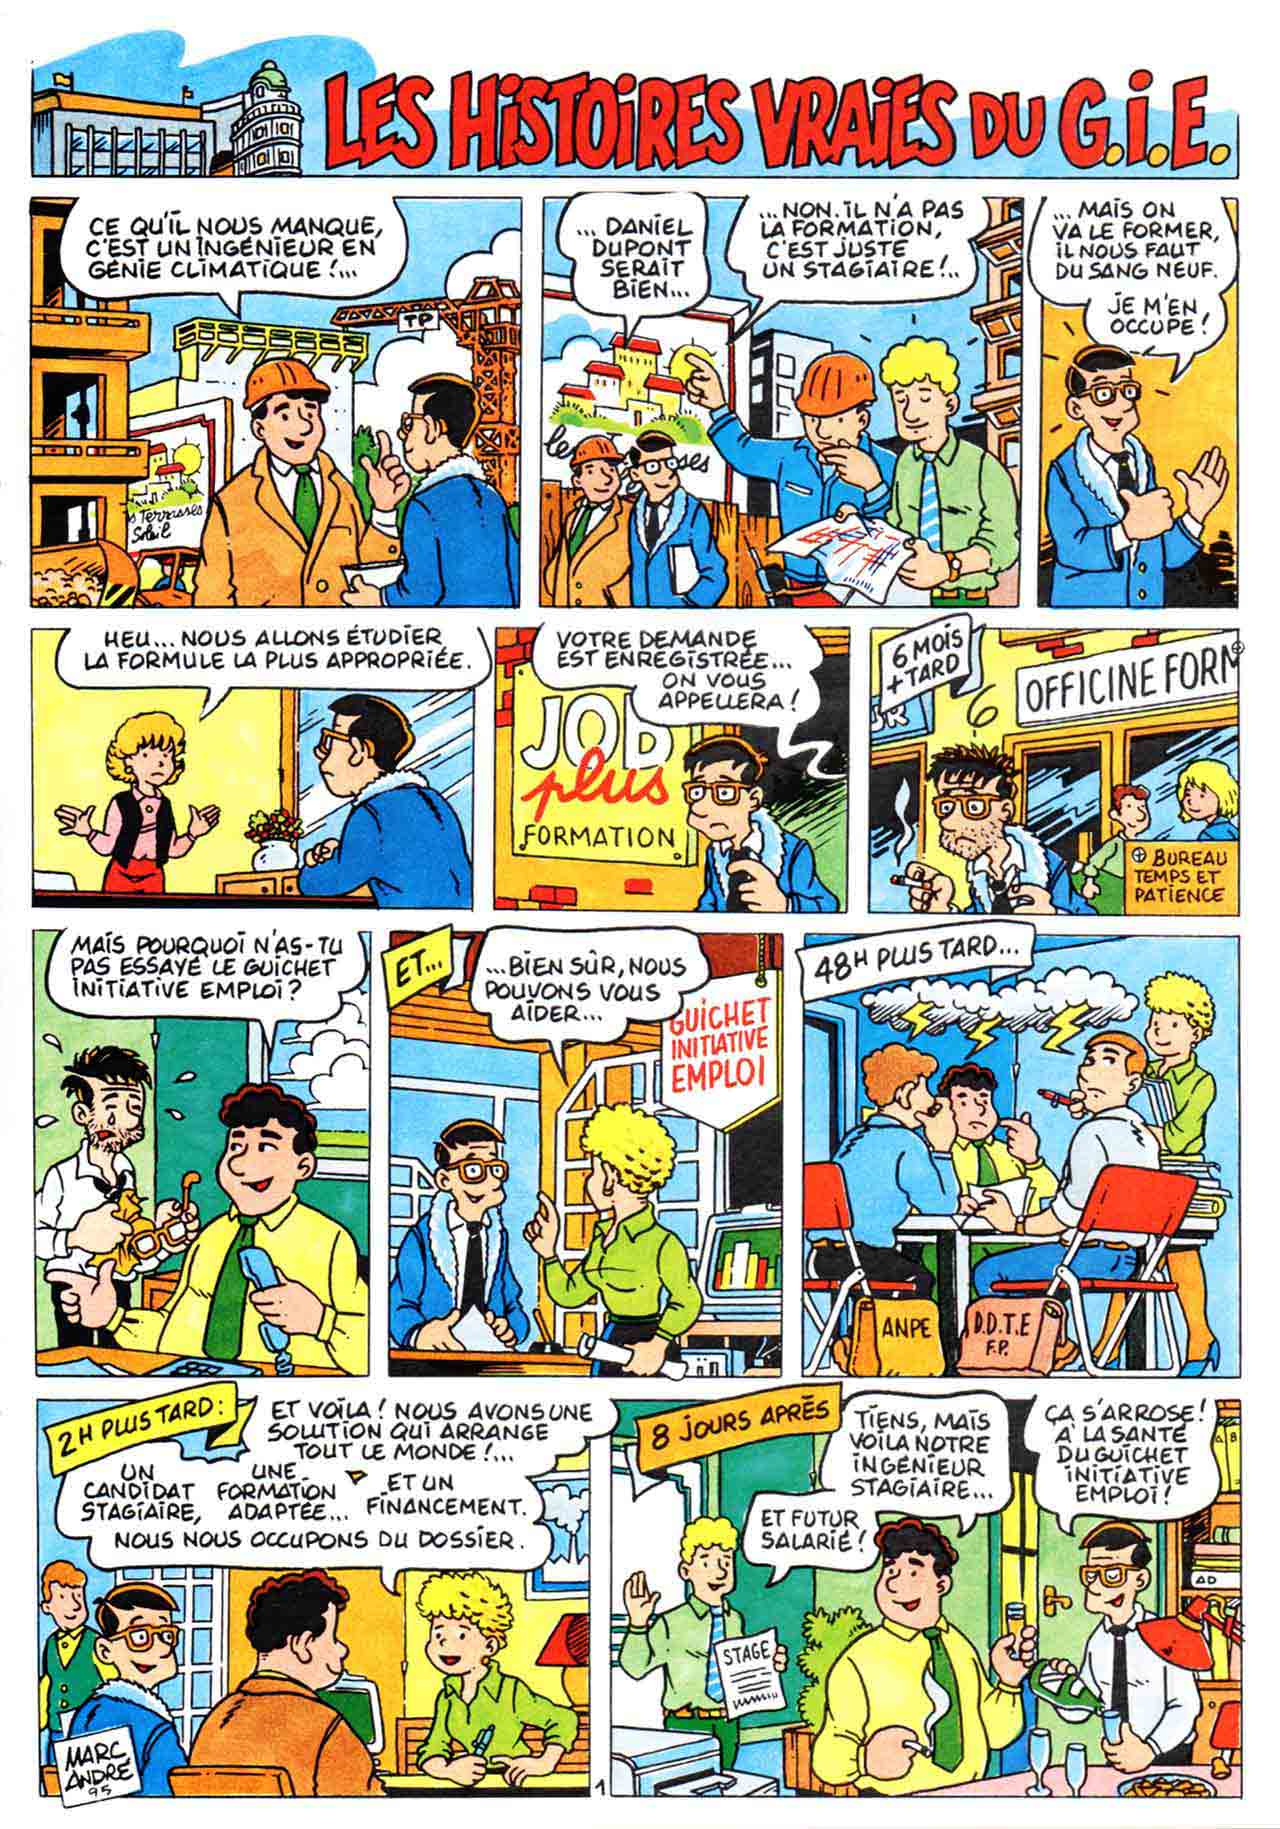 Les Histoires vraies du GIE bande dessinée dans le numéro 43 de la la revue ACTIONS (février 1996) - CCI Limoges et Haute-Vienne